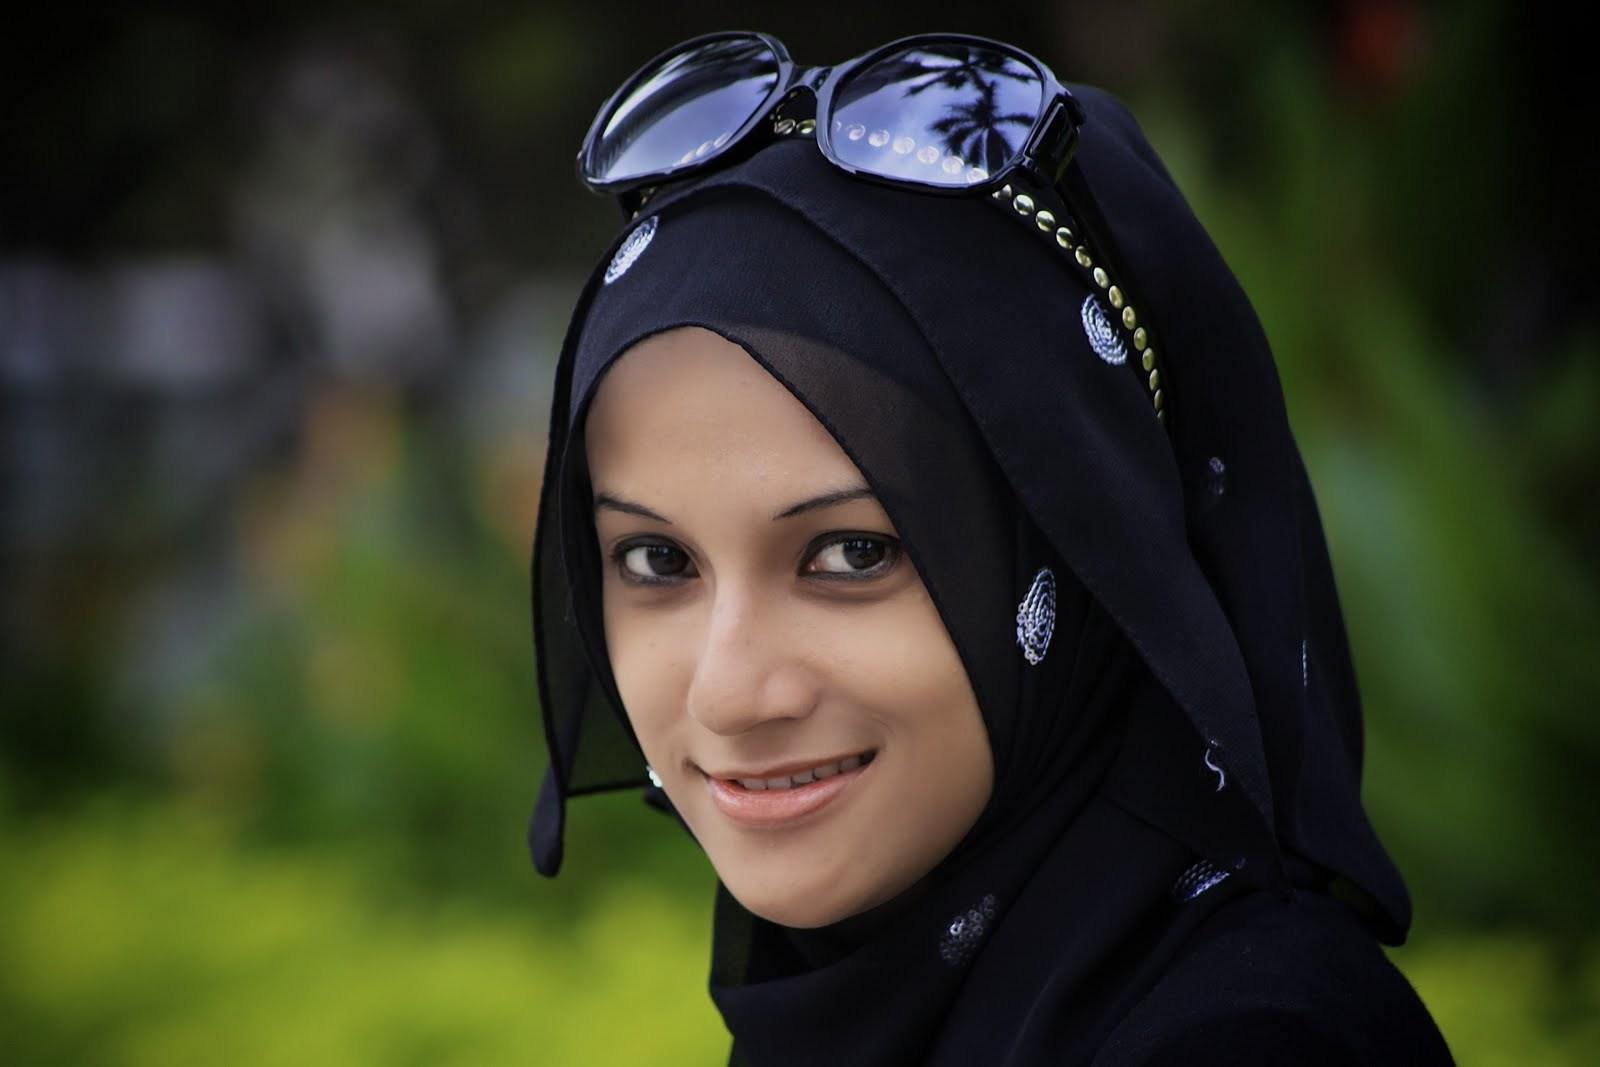 Beautiful Muslim Girl With Hijab.